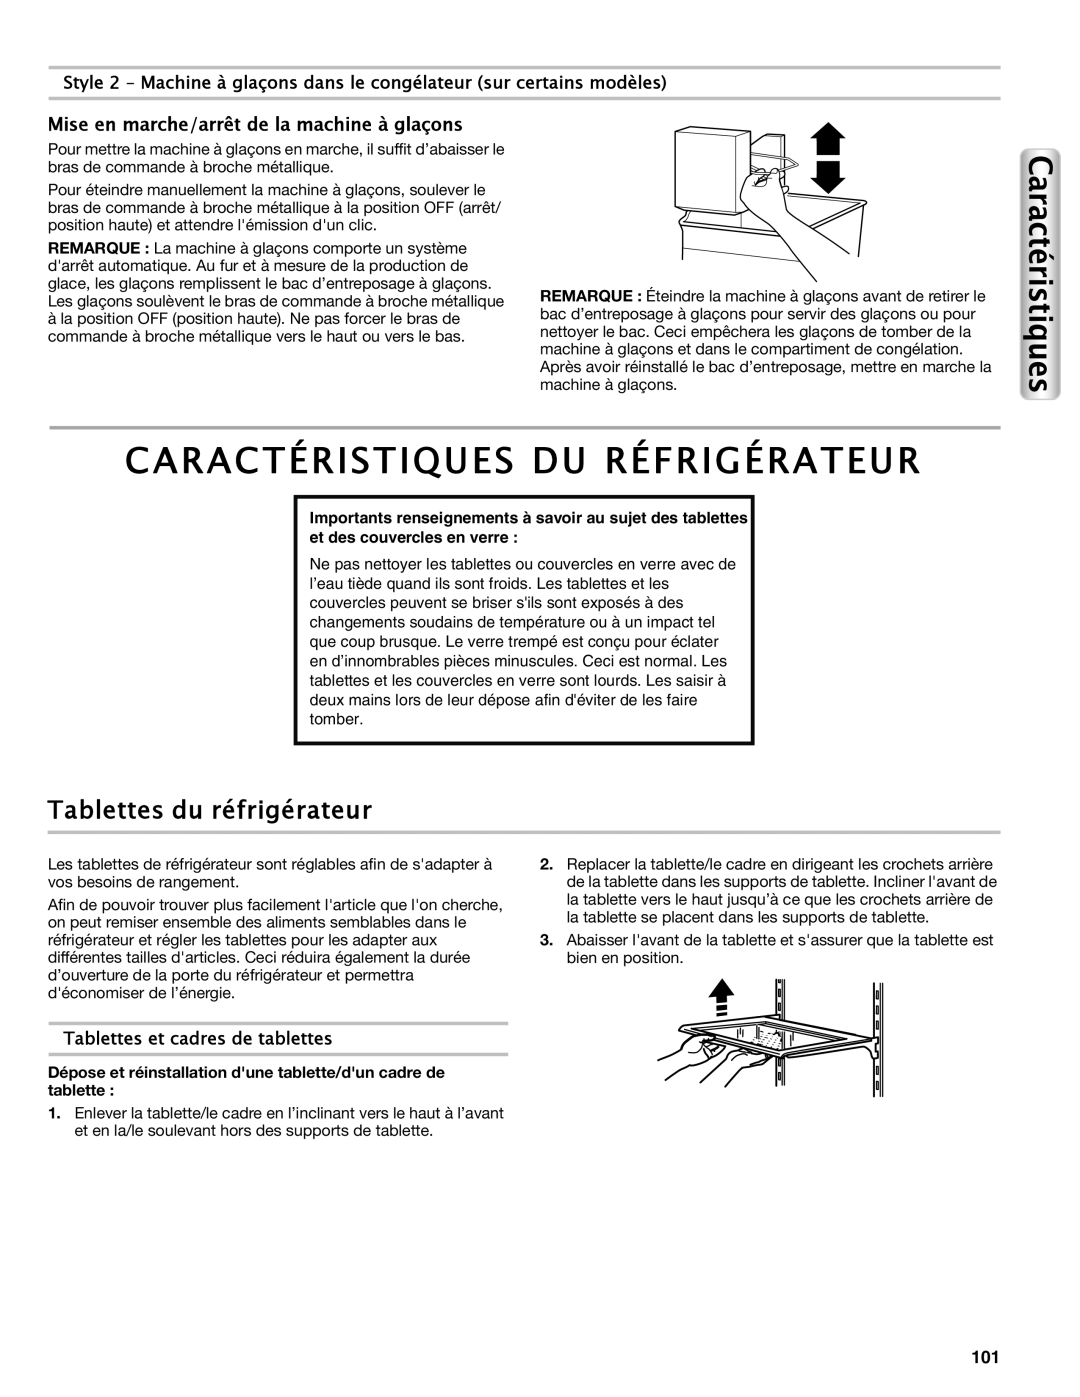 Maytag W10558104A manual Caractéristiques Du Réfrigérateur, Tablettes du réfrigérateur, Tablettes et cadres de tablettes 